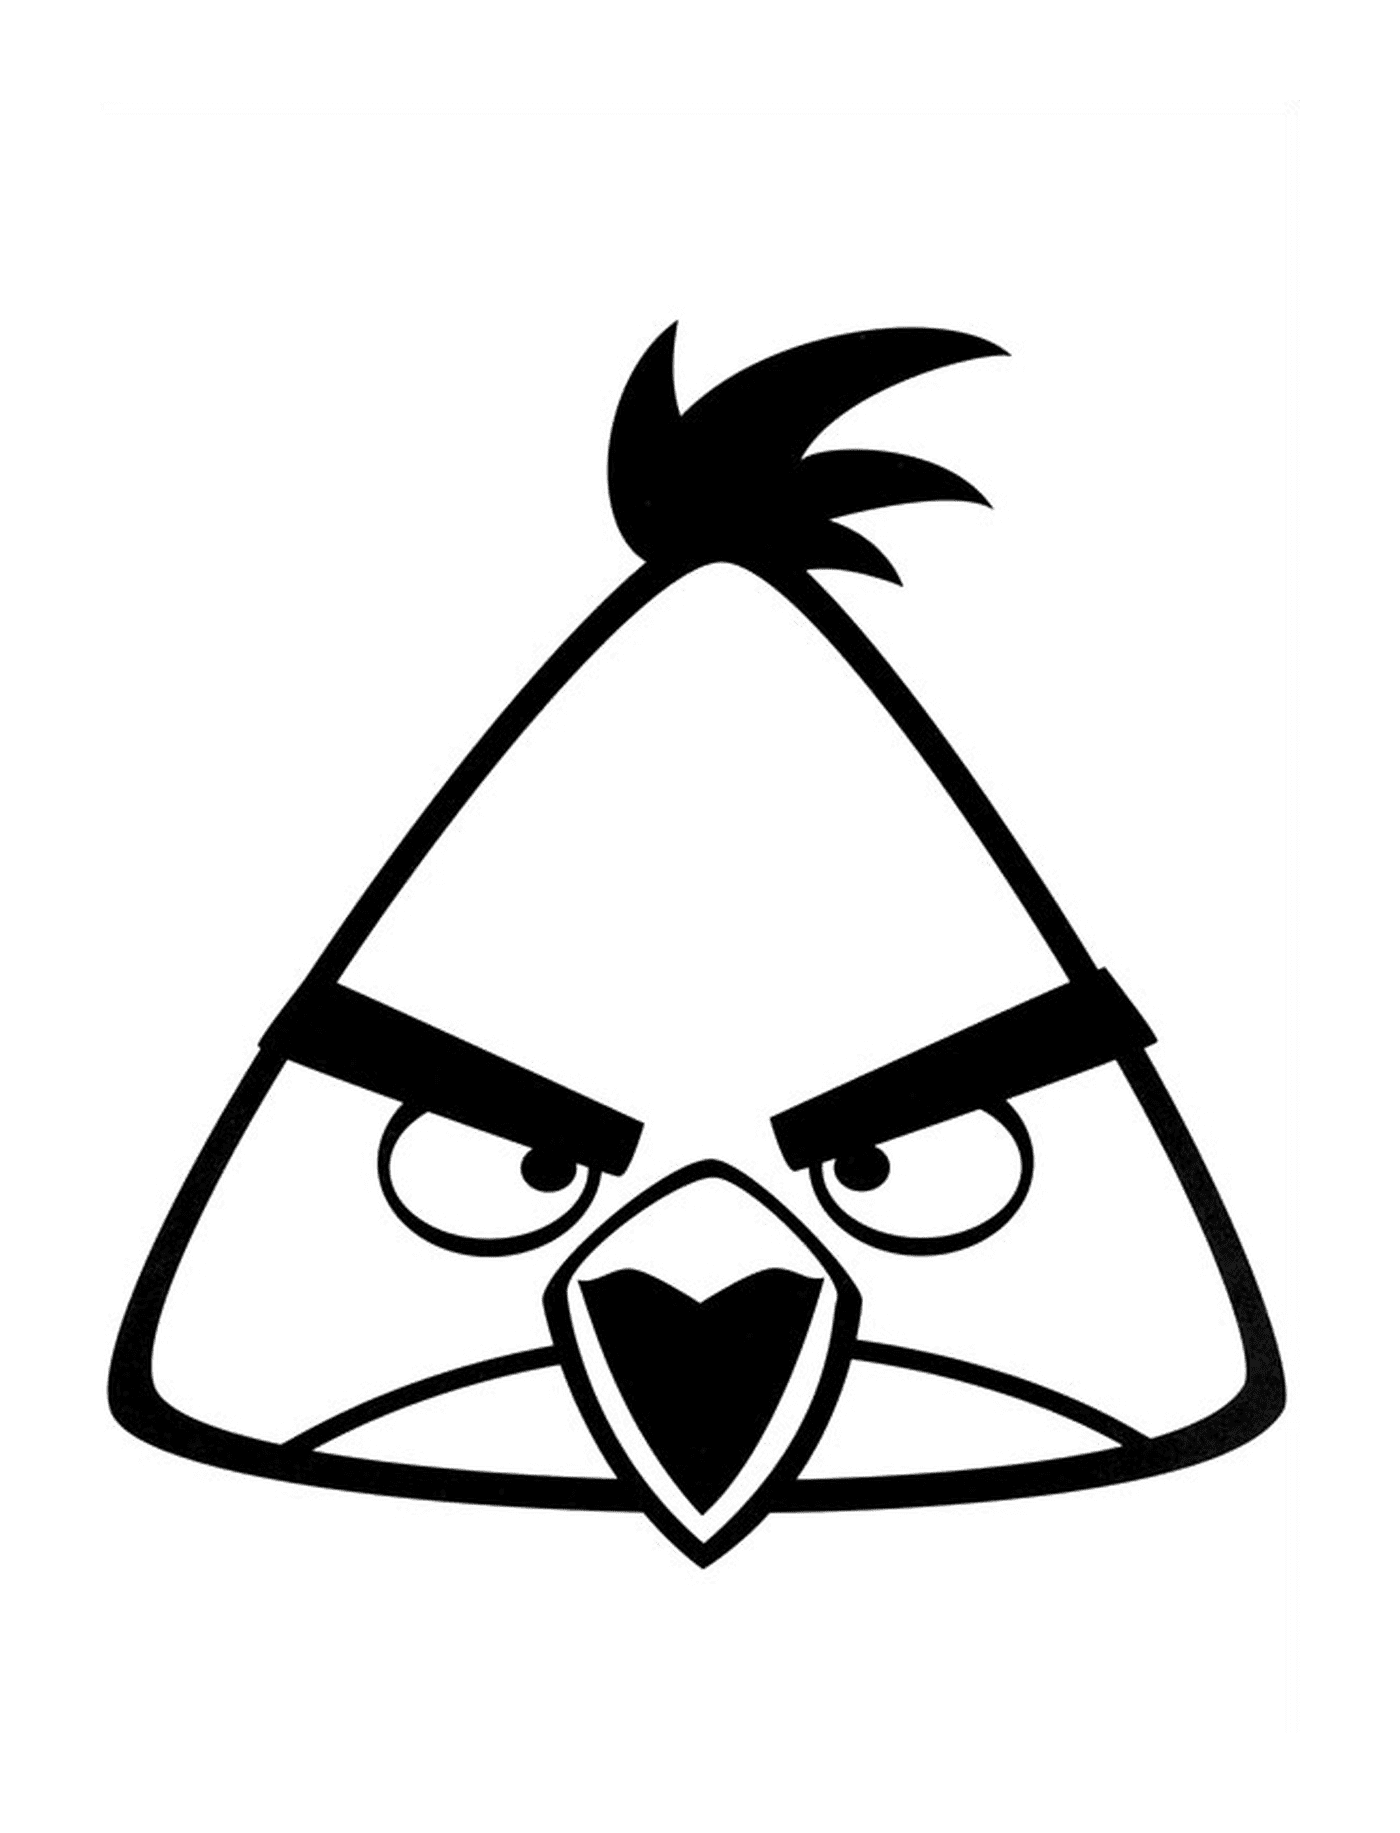  Angry Birds programma di attacco triangolo 